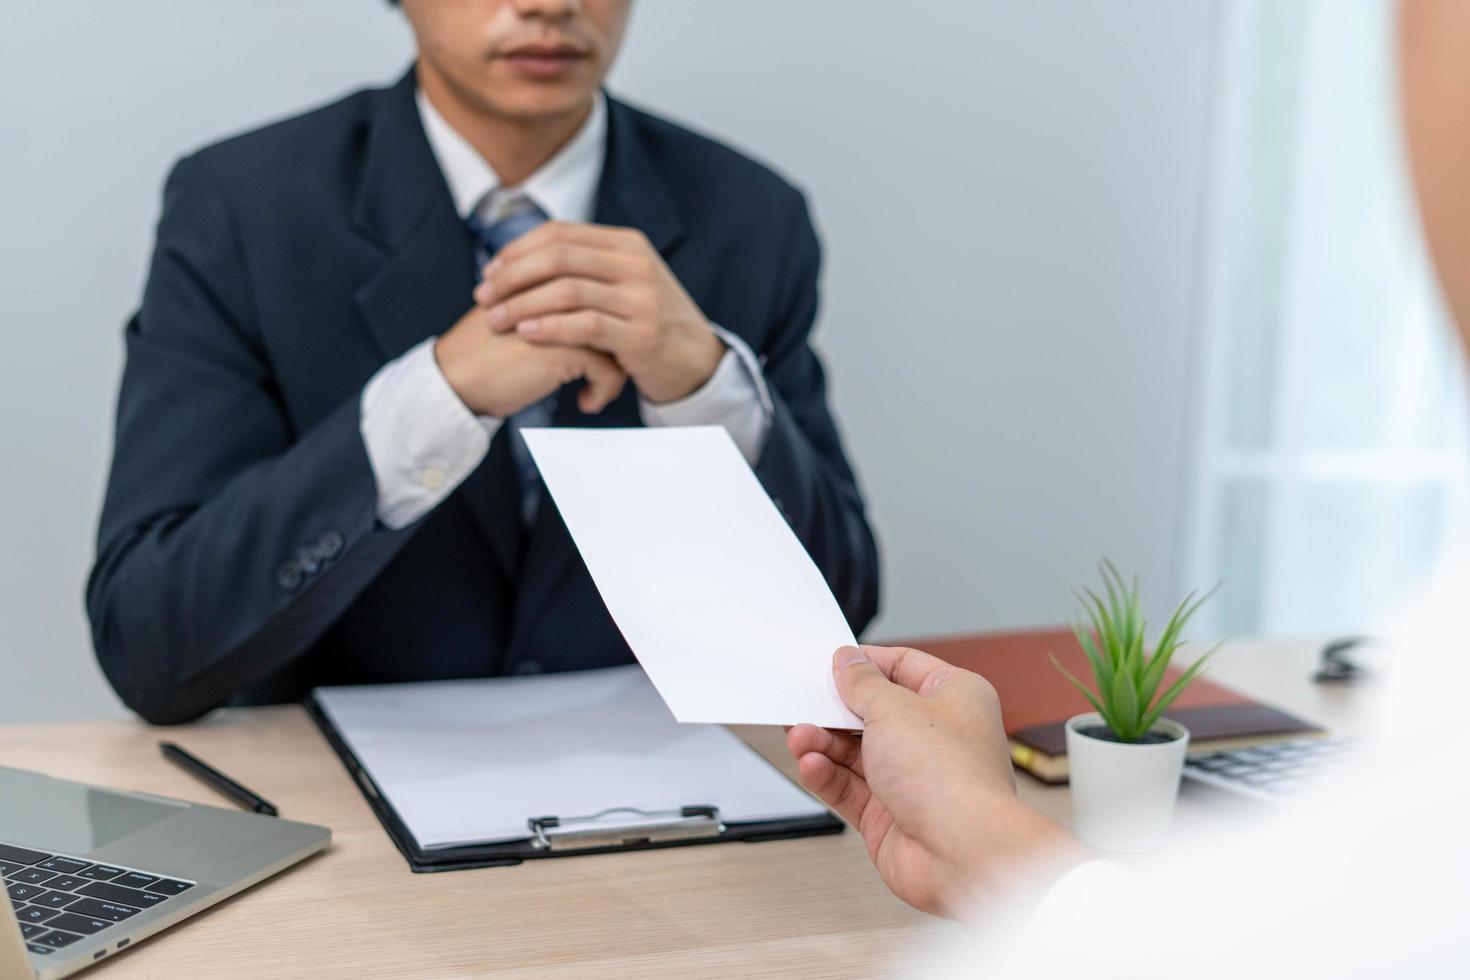 empresários enviam cartas de demissão a executivos ou gerentes. incluir informações sobre demissão e vagas e mudanças de emprego. foto